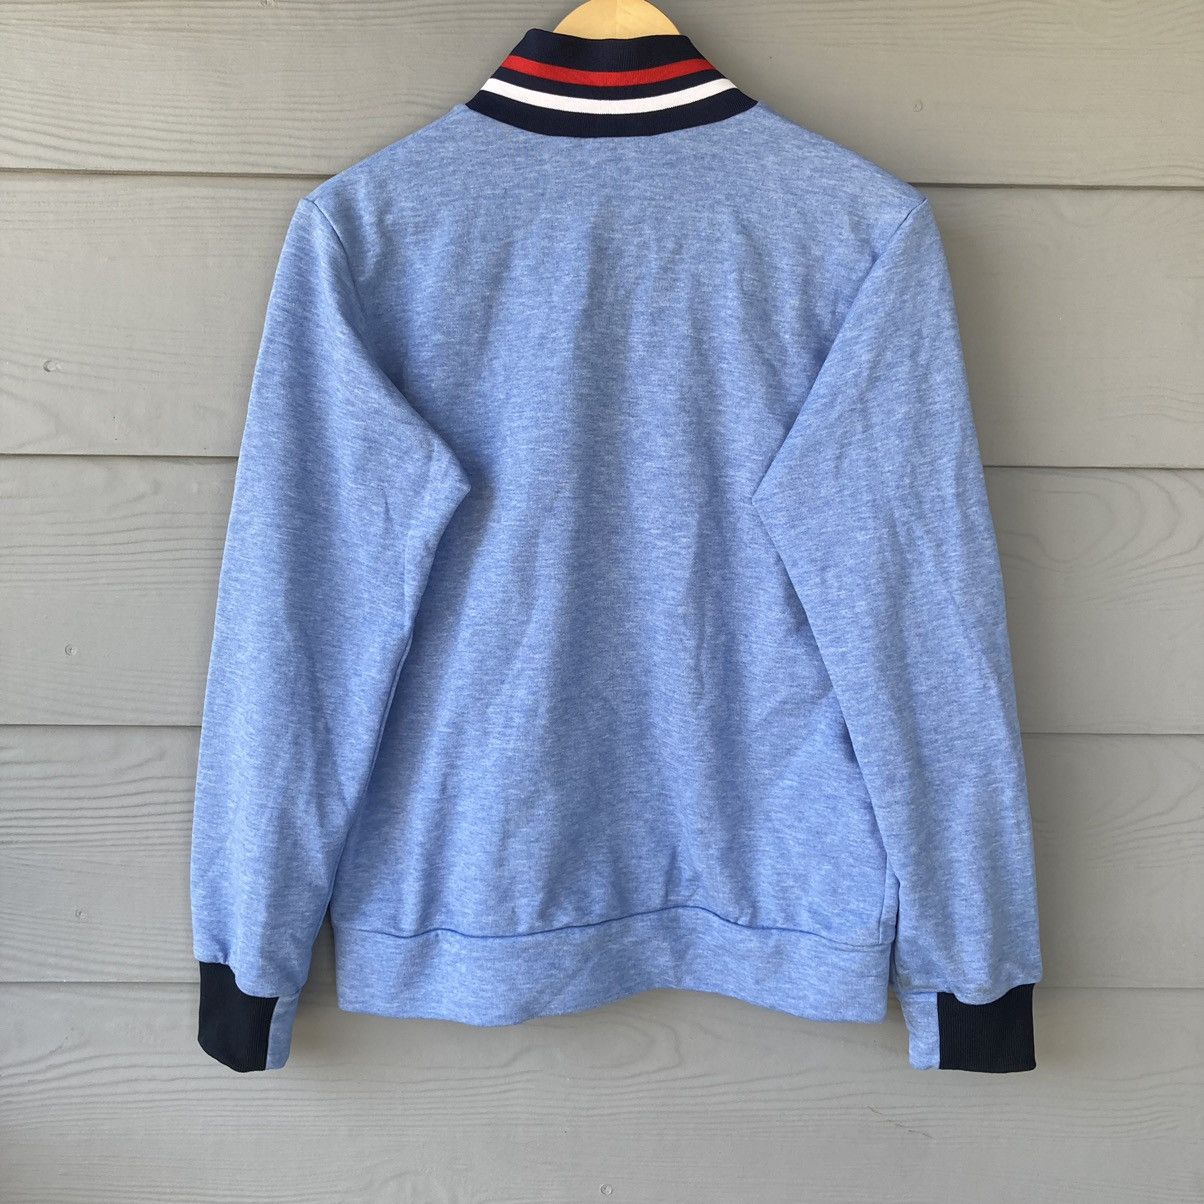 Vintage Umbro England Sweatshirt - 10